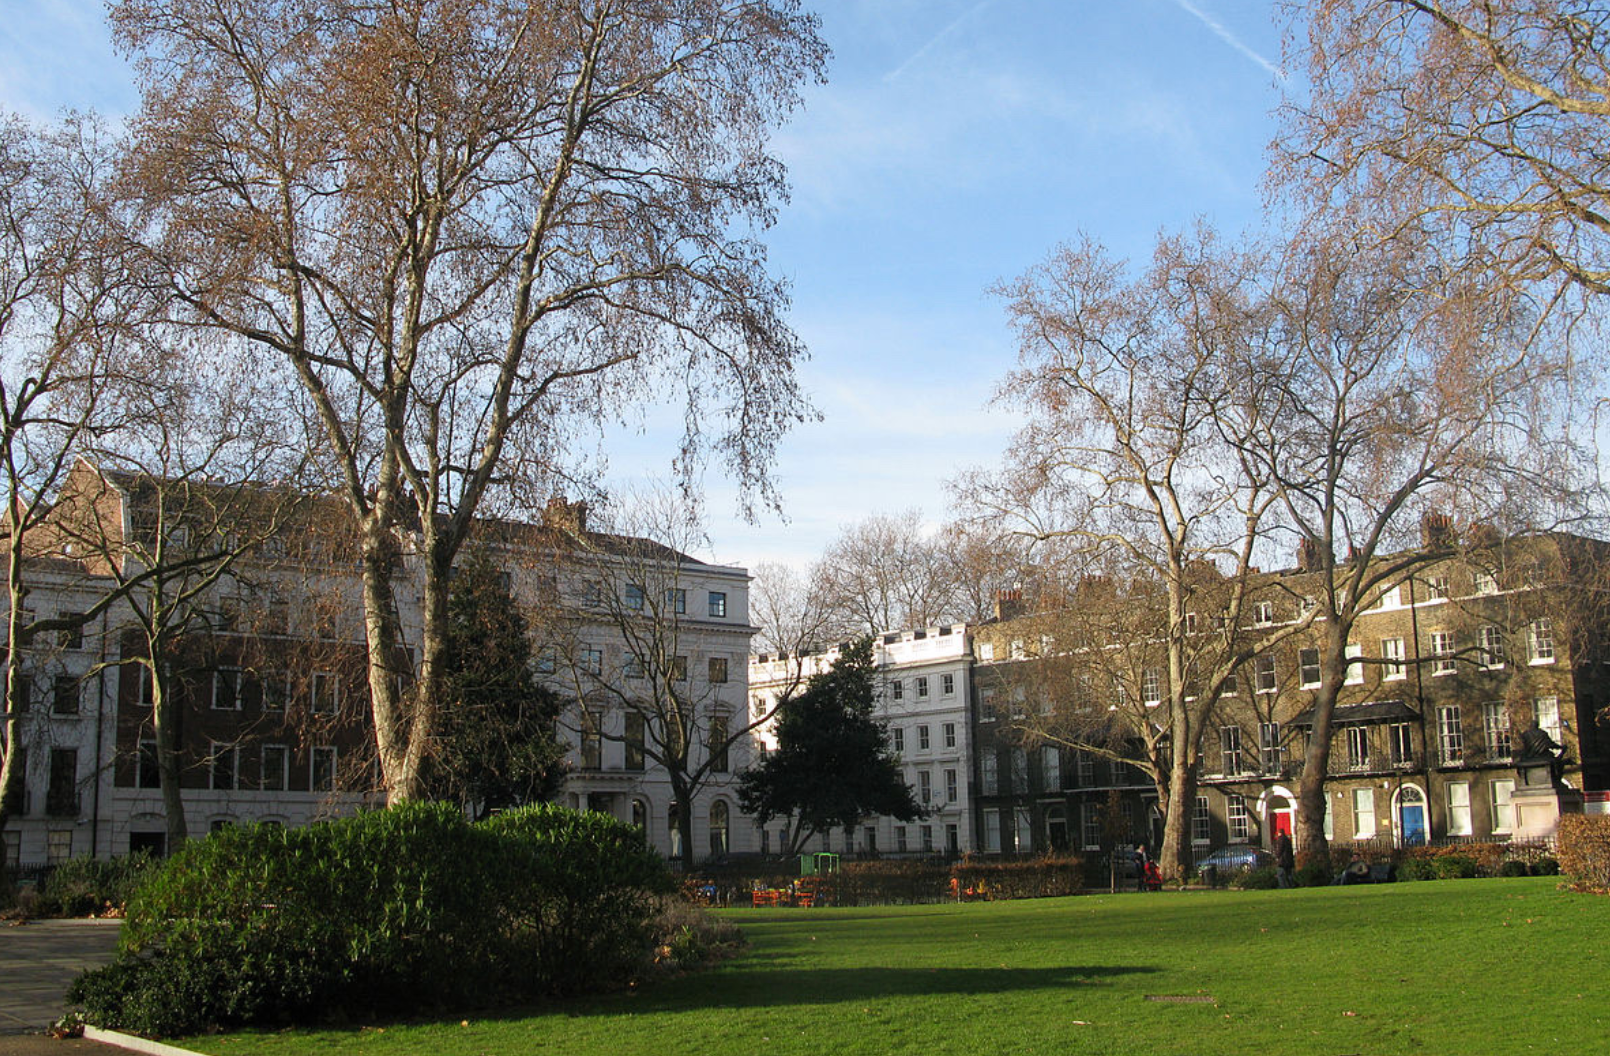 Bloomsbury Square playground